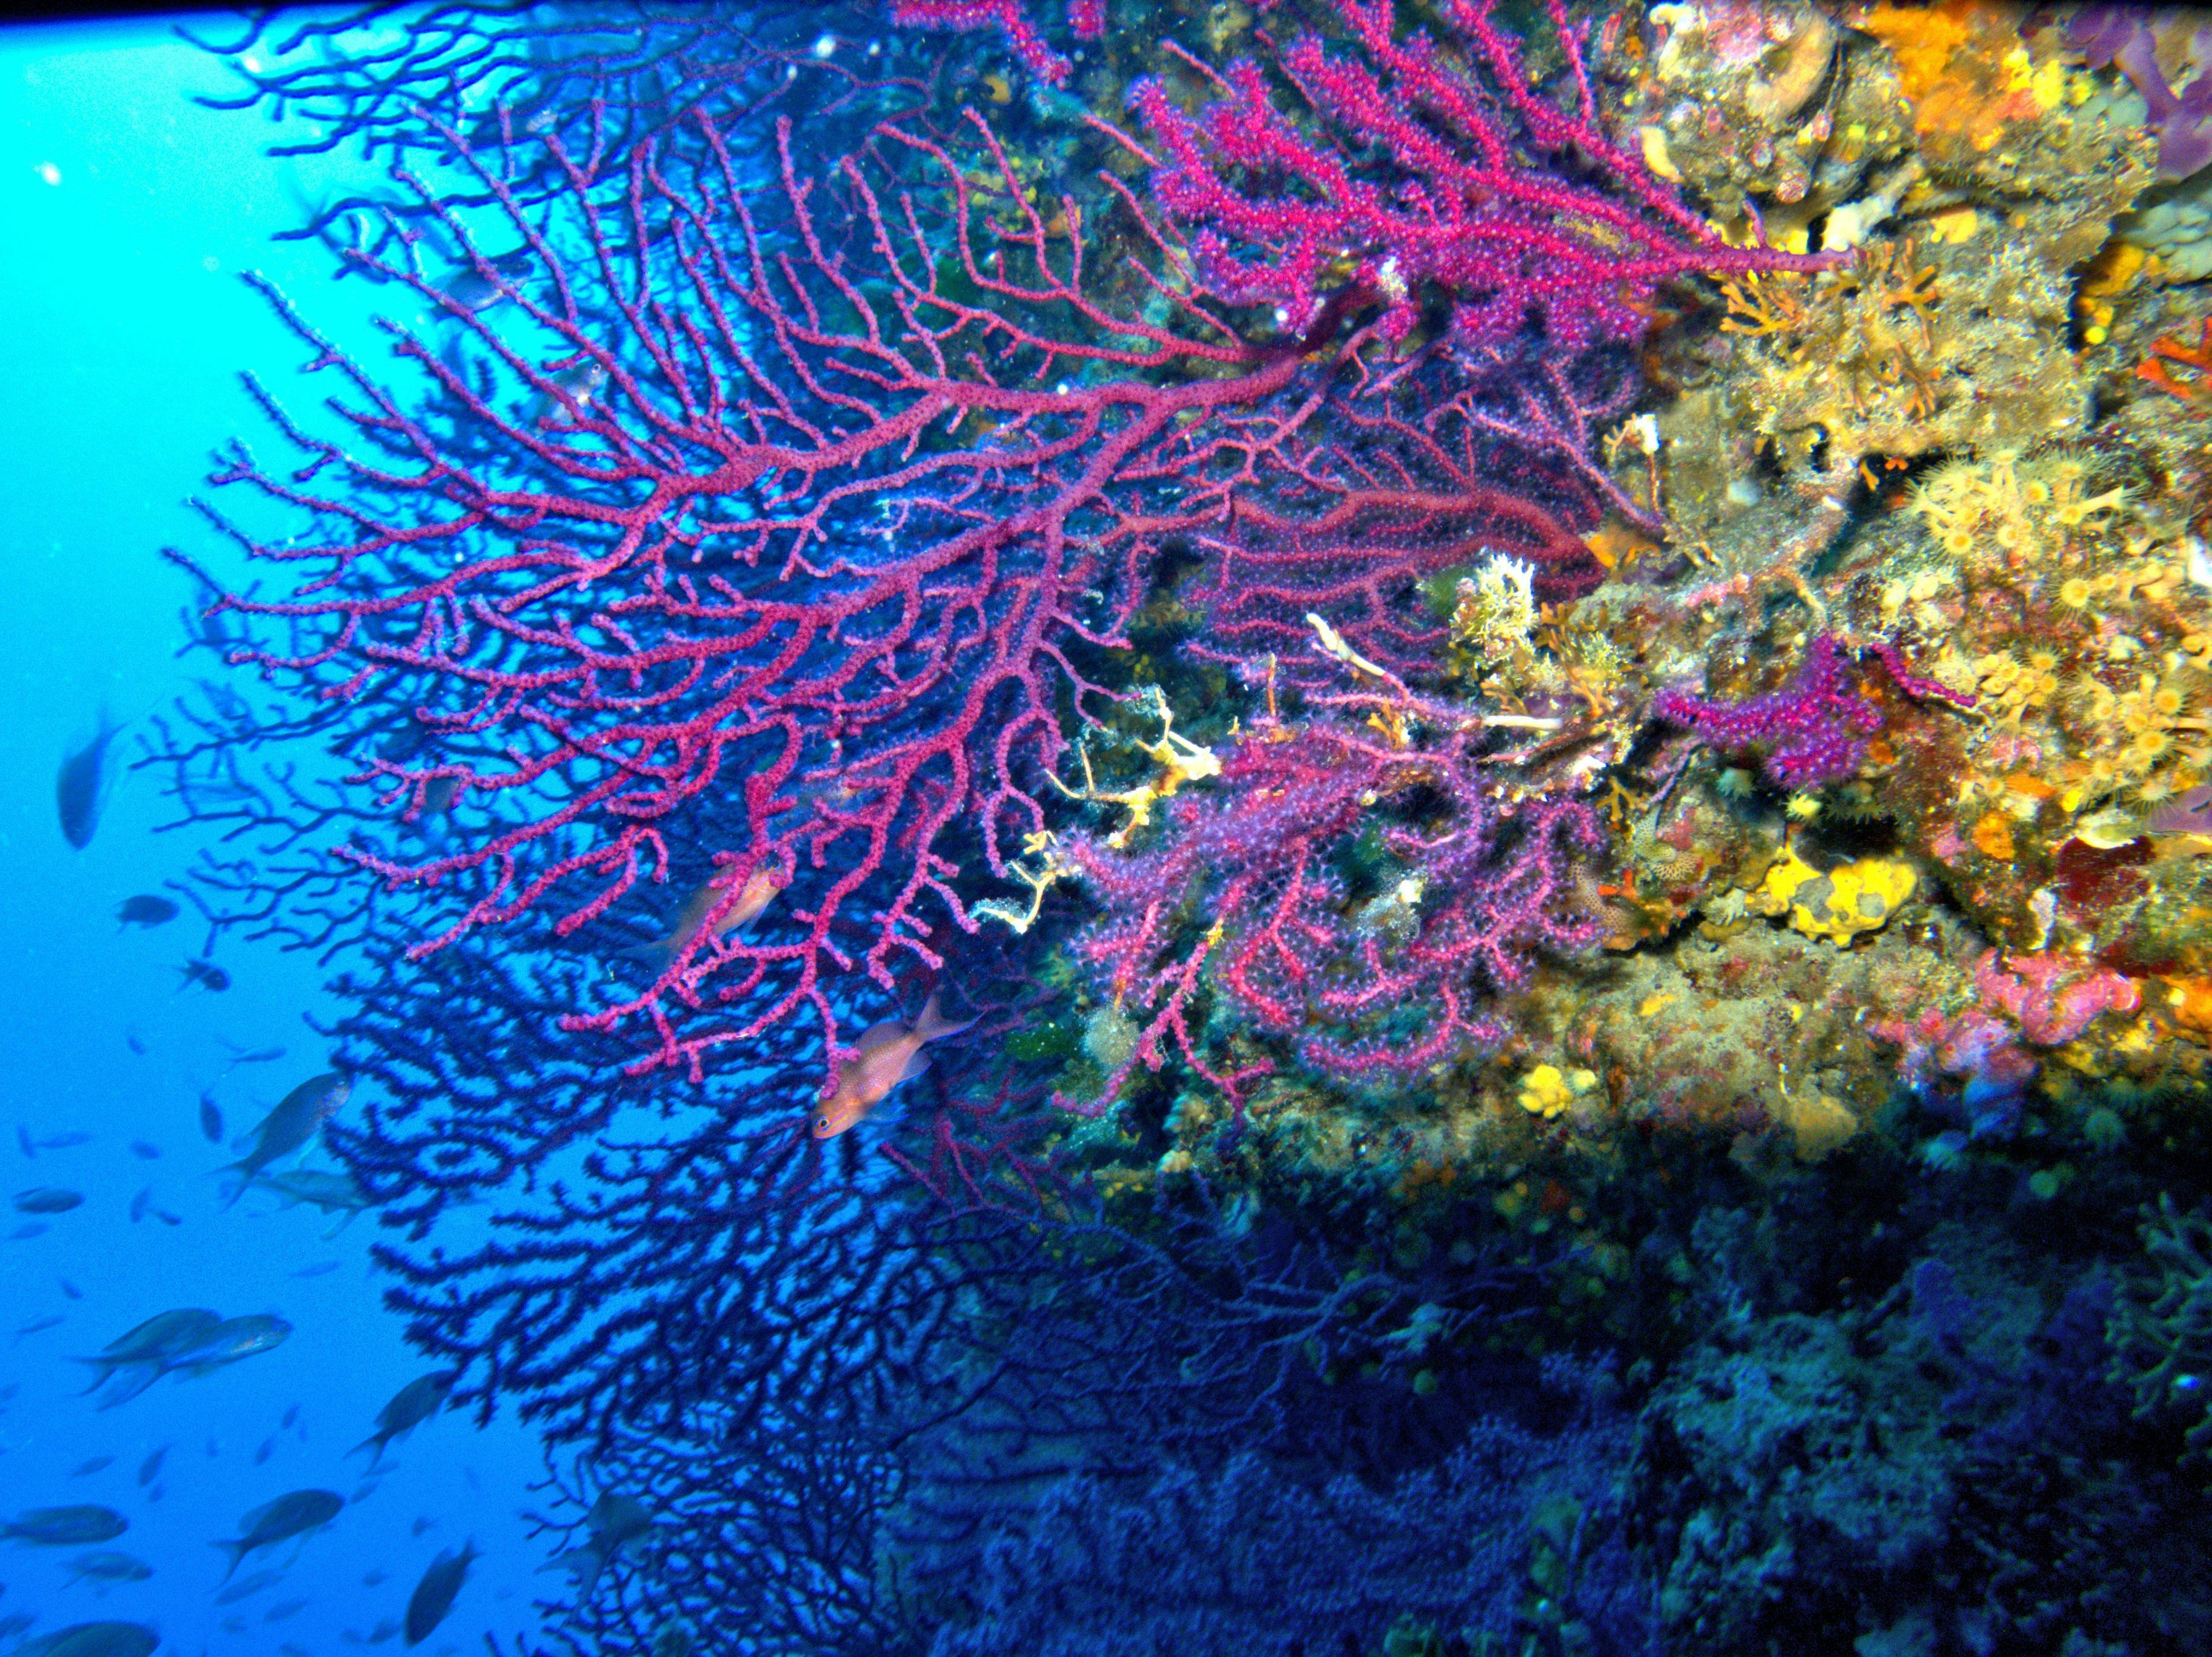 Koraly vejarovniky FOTO Lorenzo Merotto.jpg